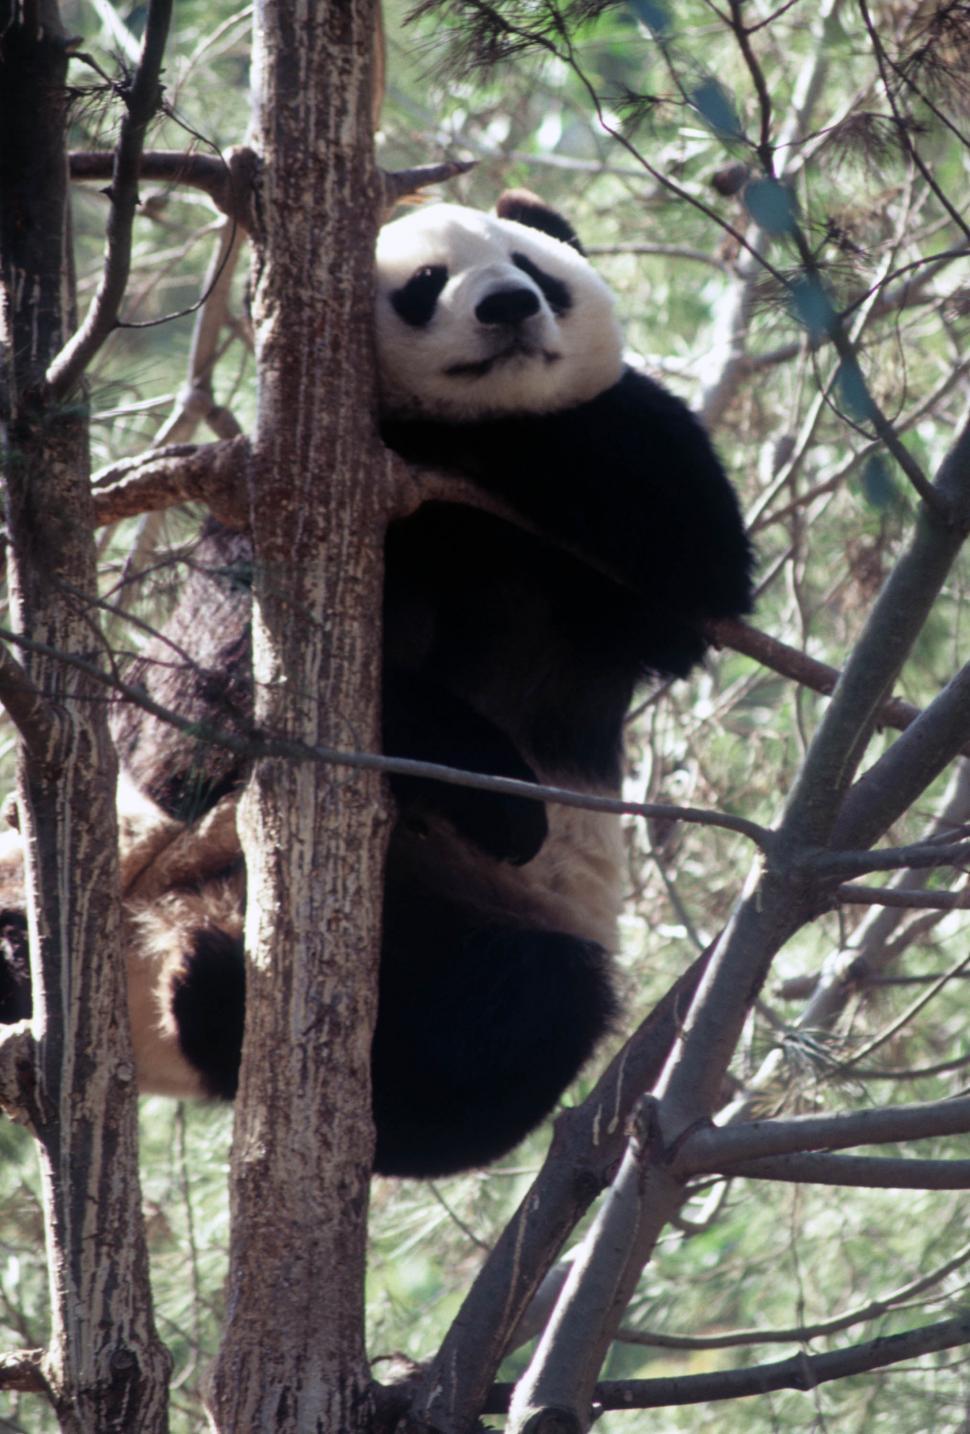 Free Image of Panda climbing 